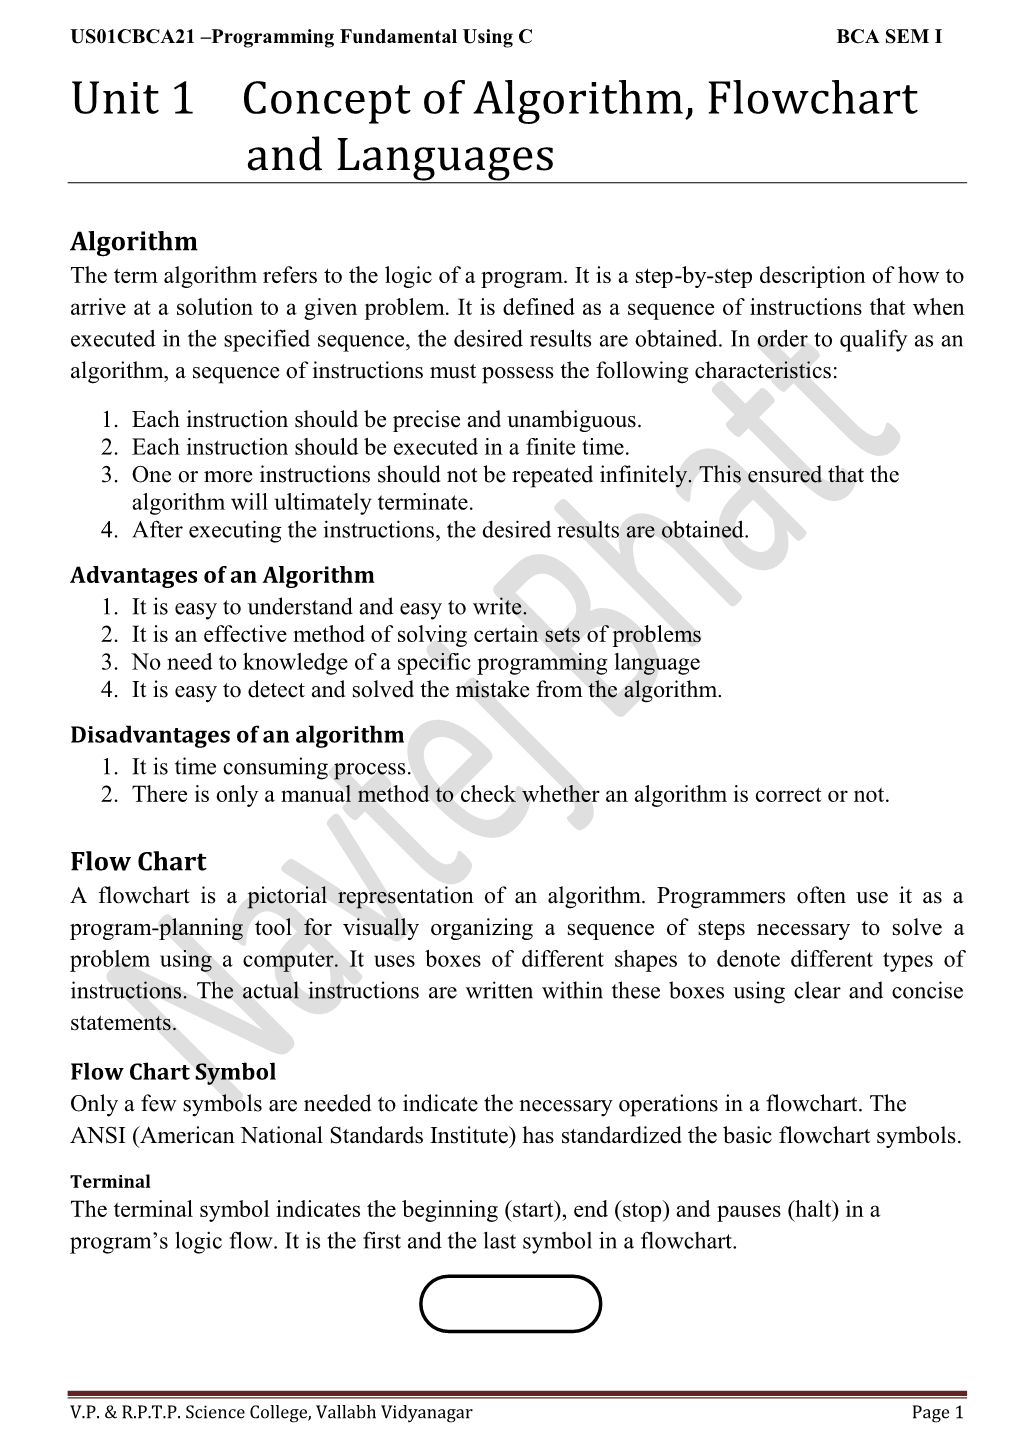 Unit 1 Concept of Algorithm, Flowchart and Languages